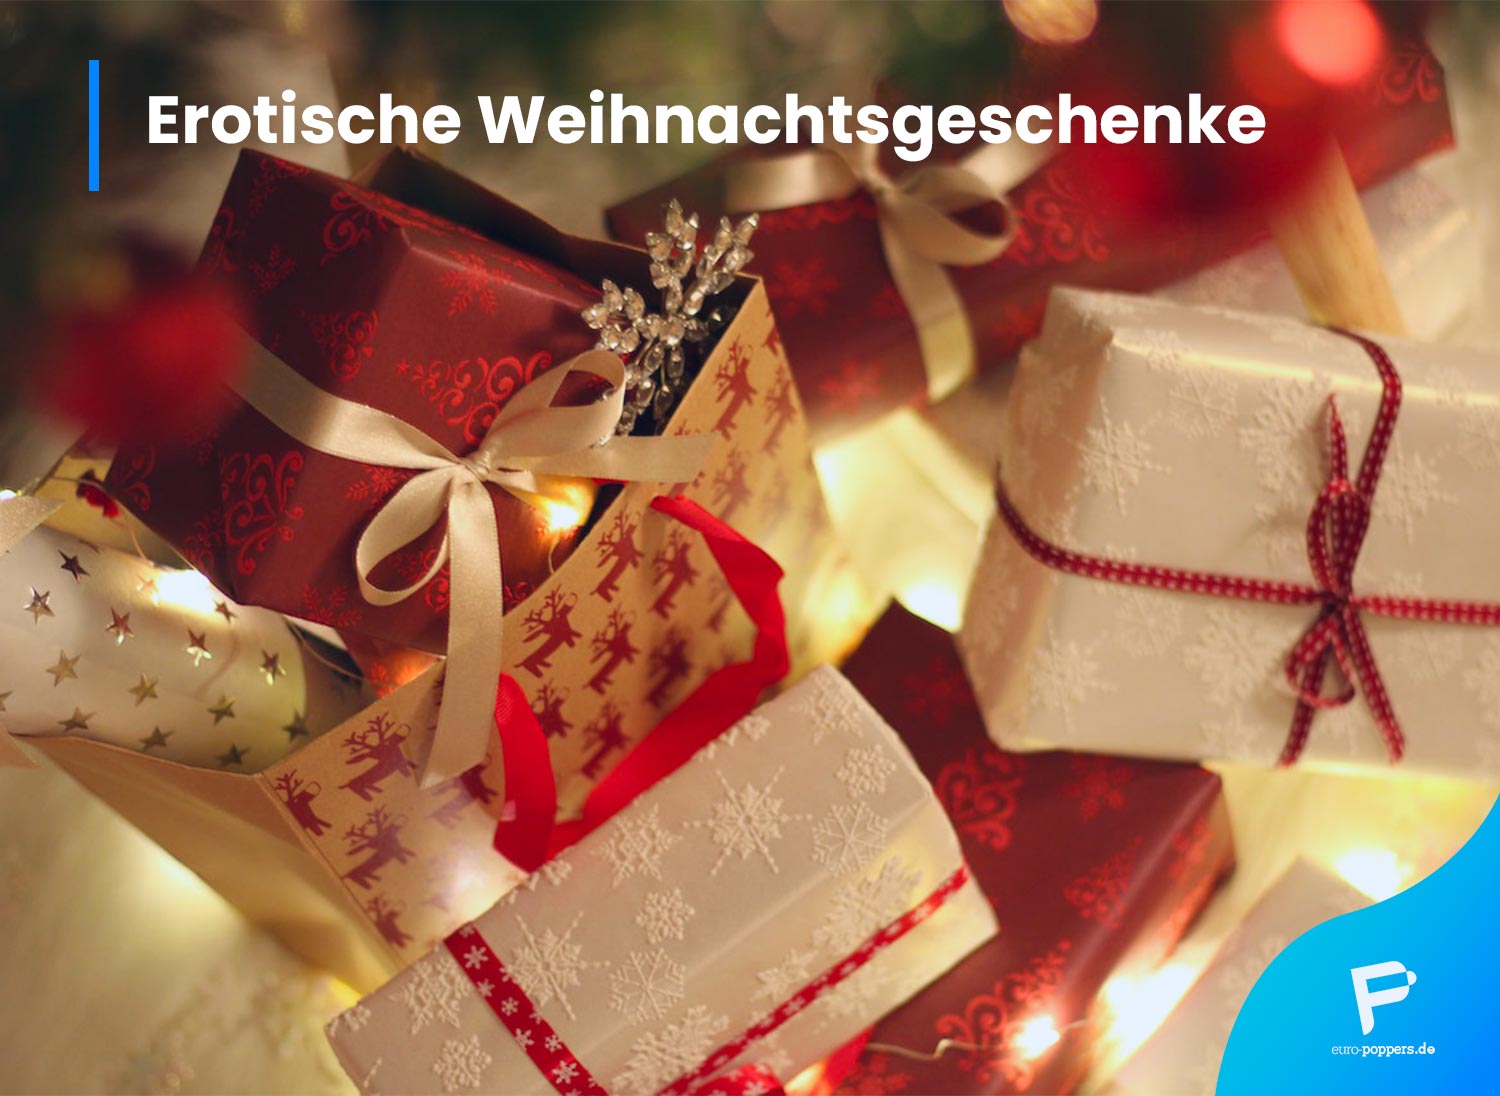 Read more about the article Erotische Weihnachtsgeschenke: unsere Favoriten